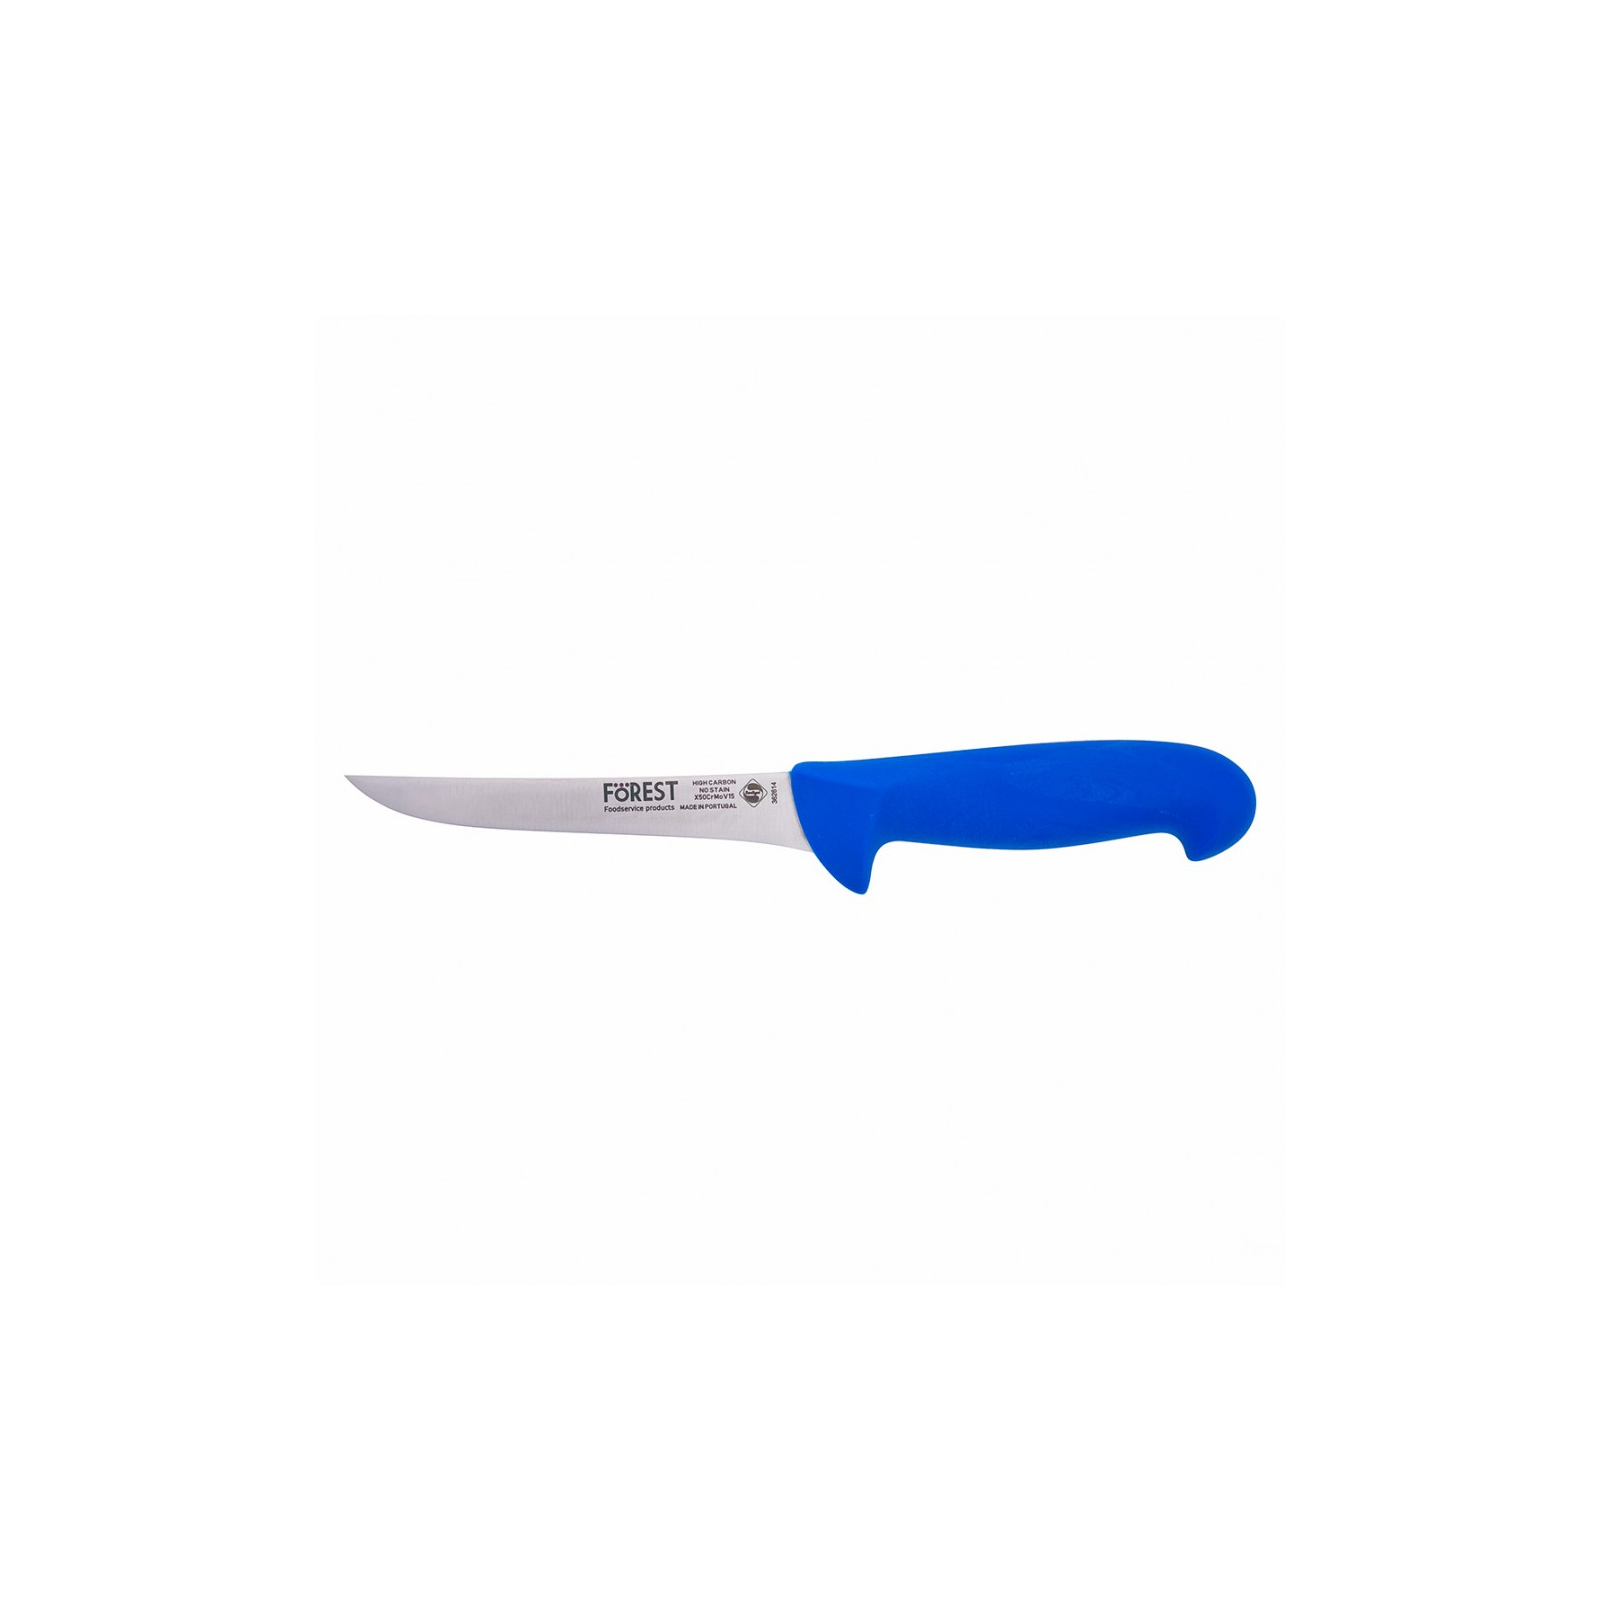 Кухонный нож FoREST обвалювальний 140 мм Синій (362614)